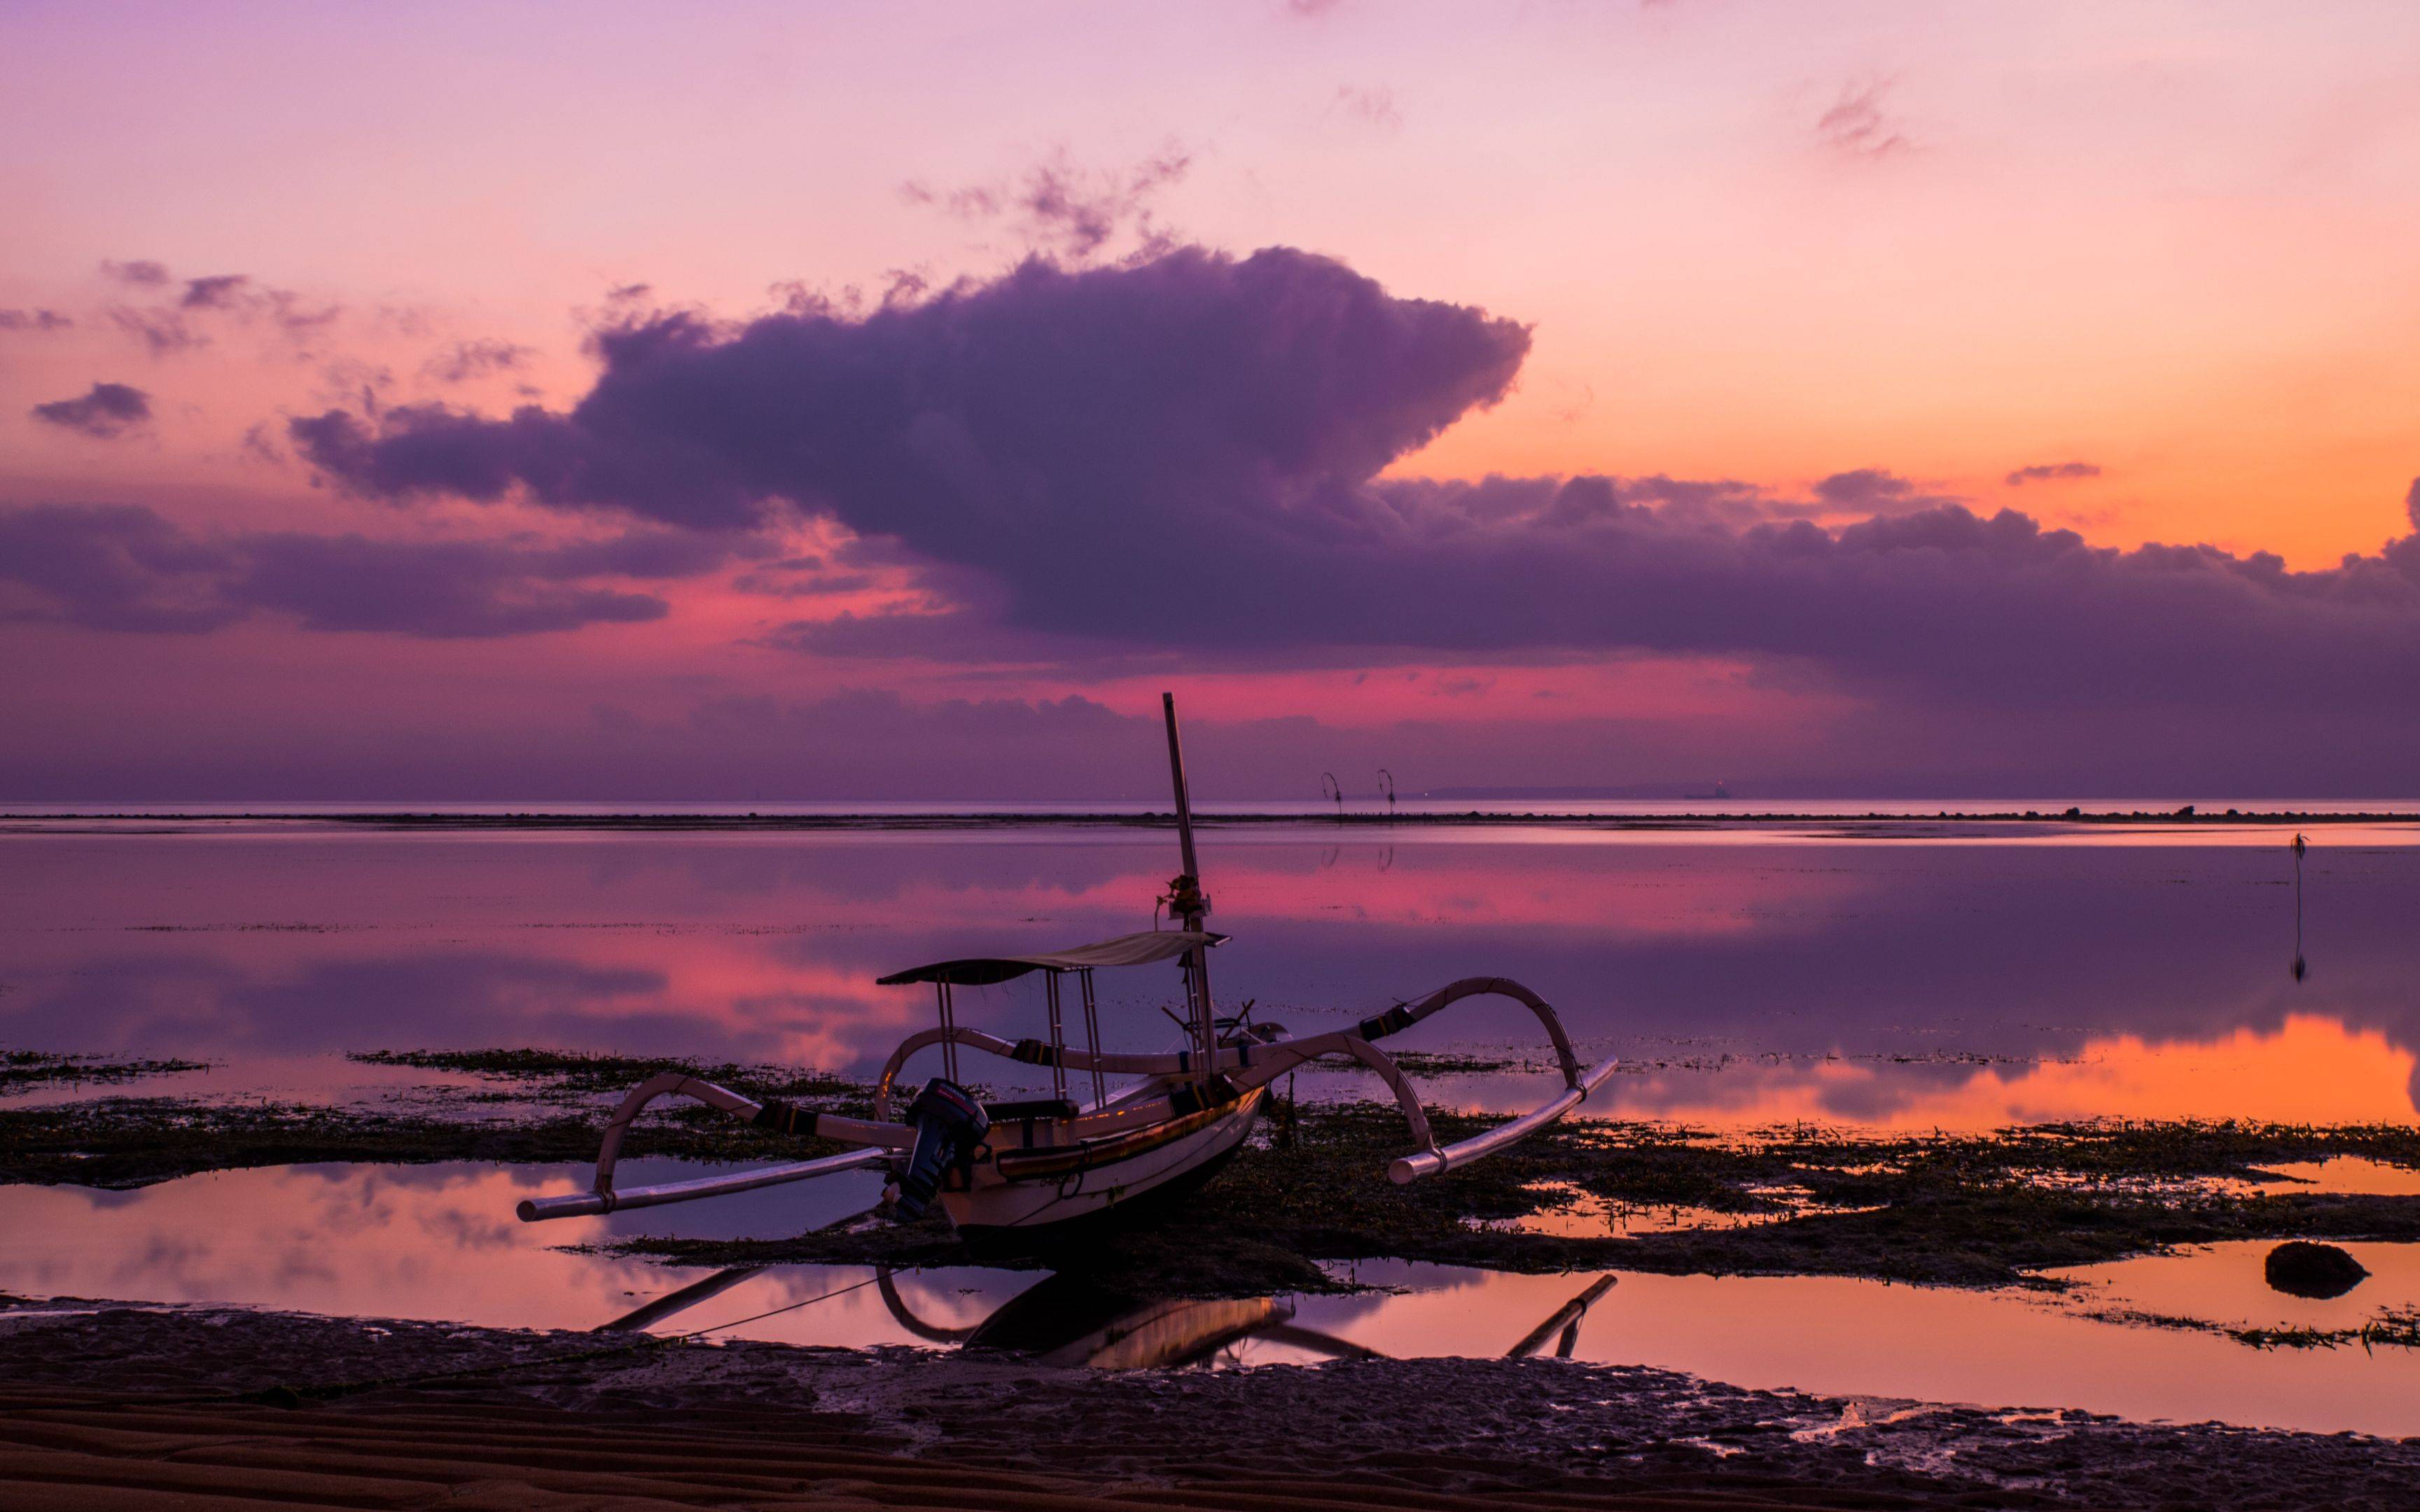 Despidiendo el Paraíso: Último Día en Bali, Rumbo al Aeropuerto